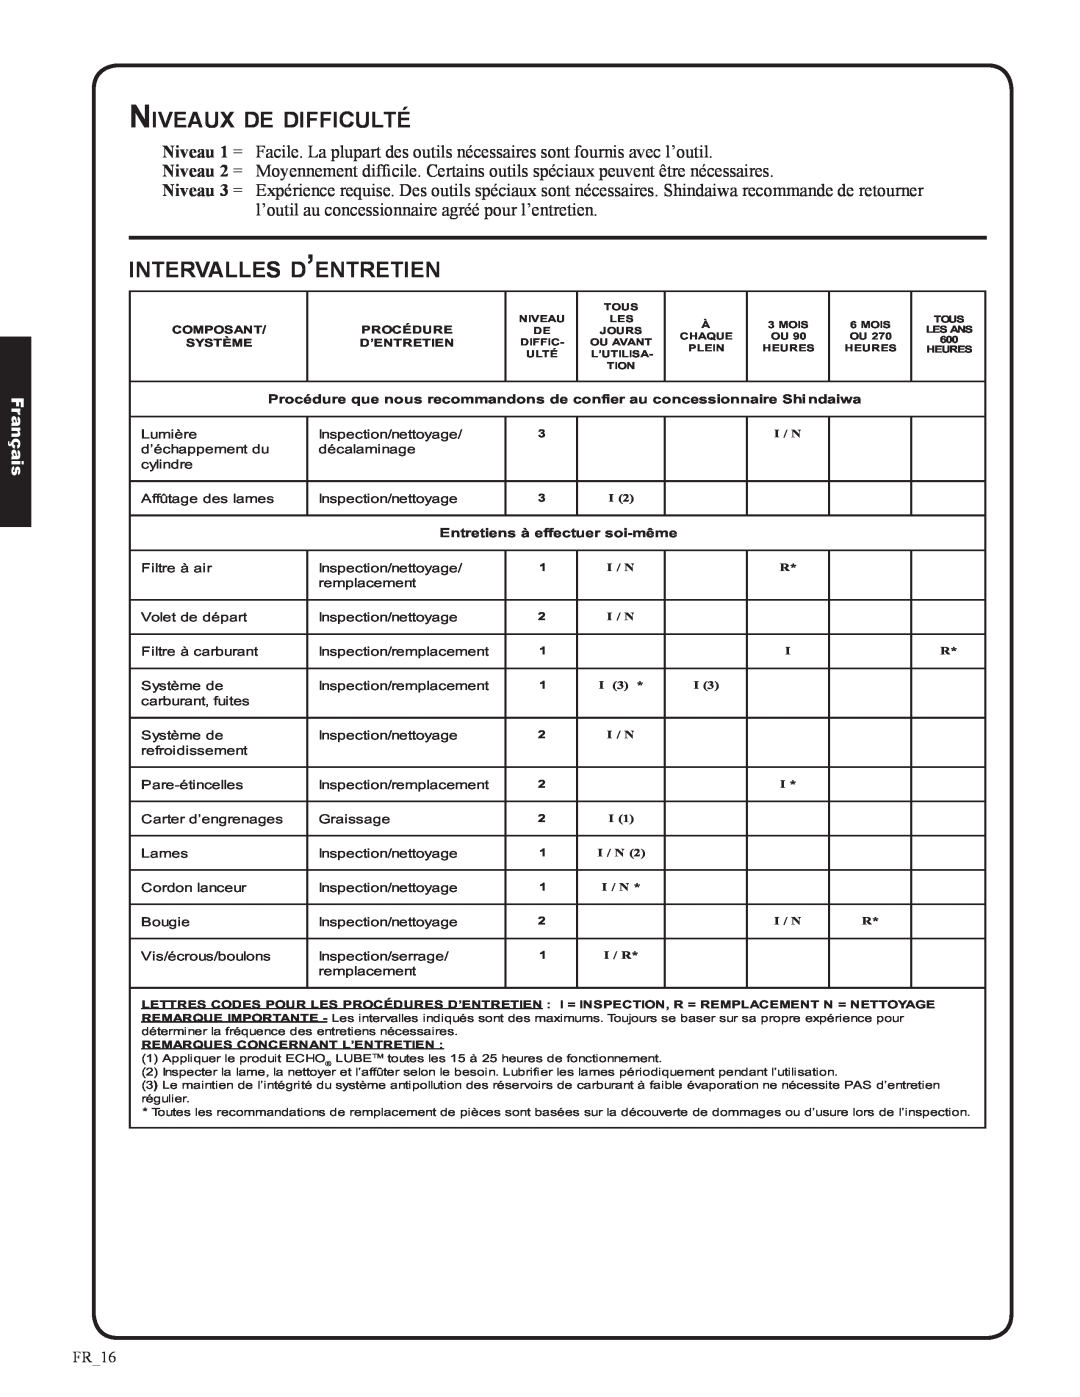 Shindaiwa DH212, 82053 manual Niveaux de difficulté, intervalles d’entretien, Français, FR_16 